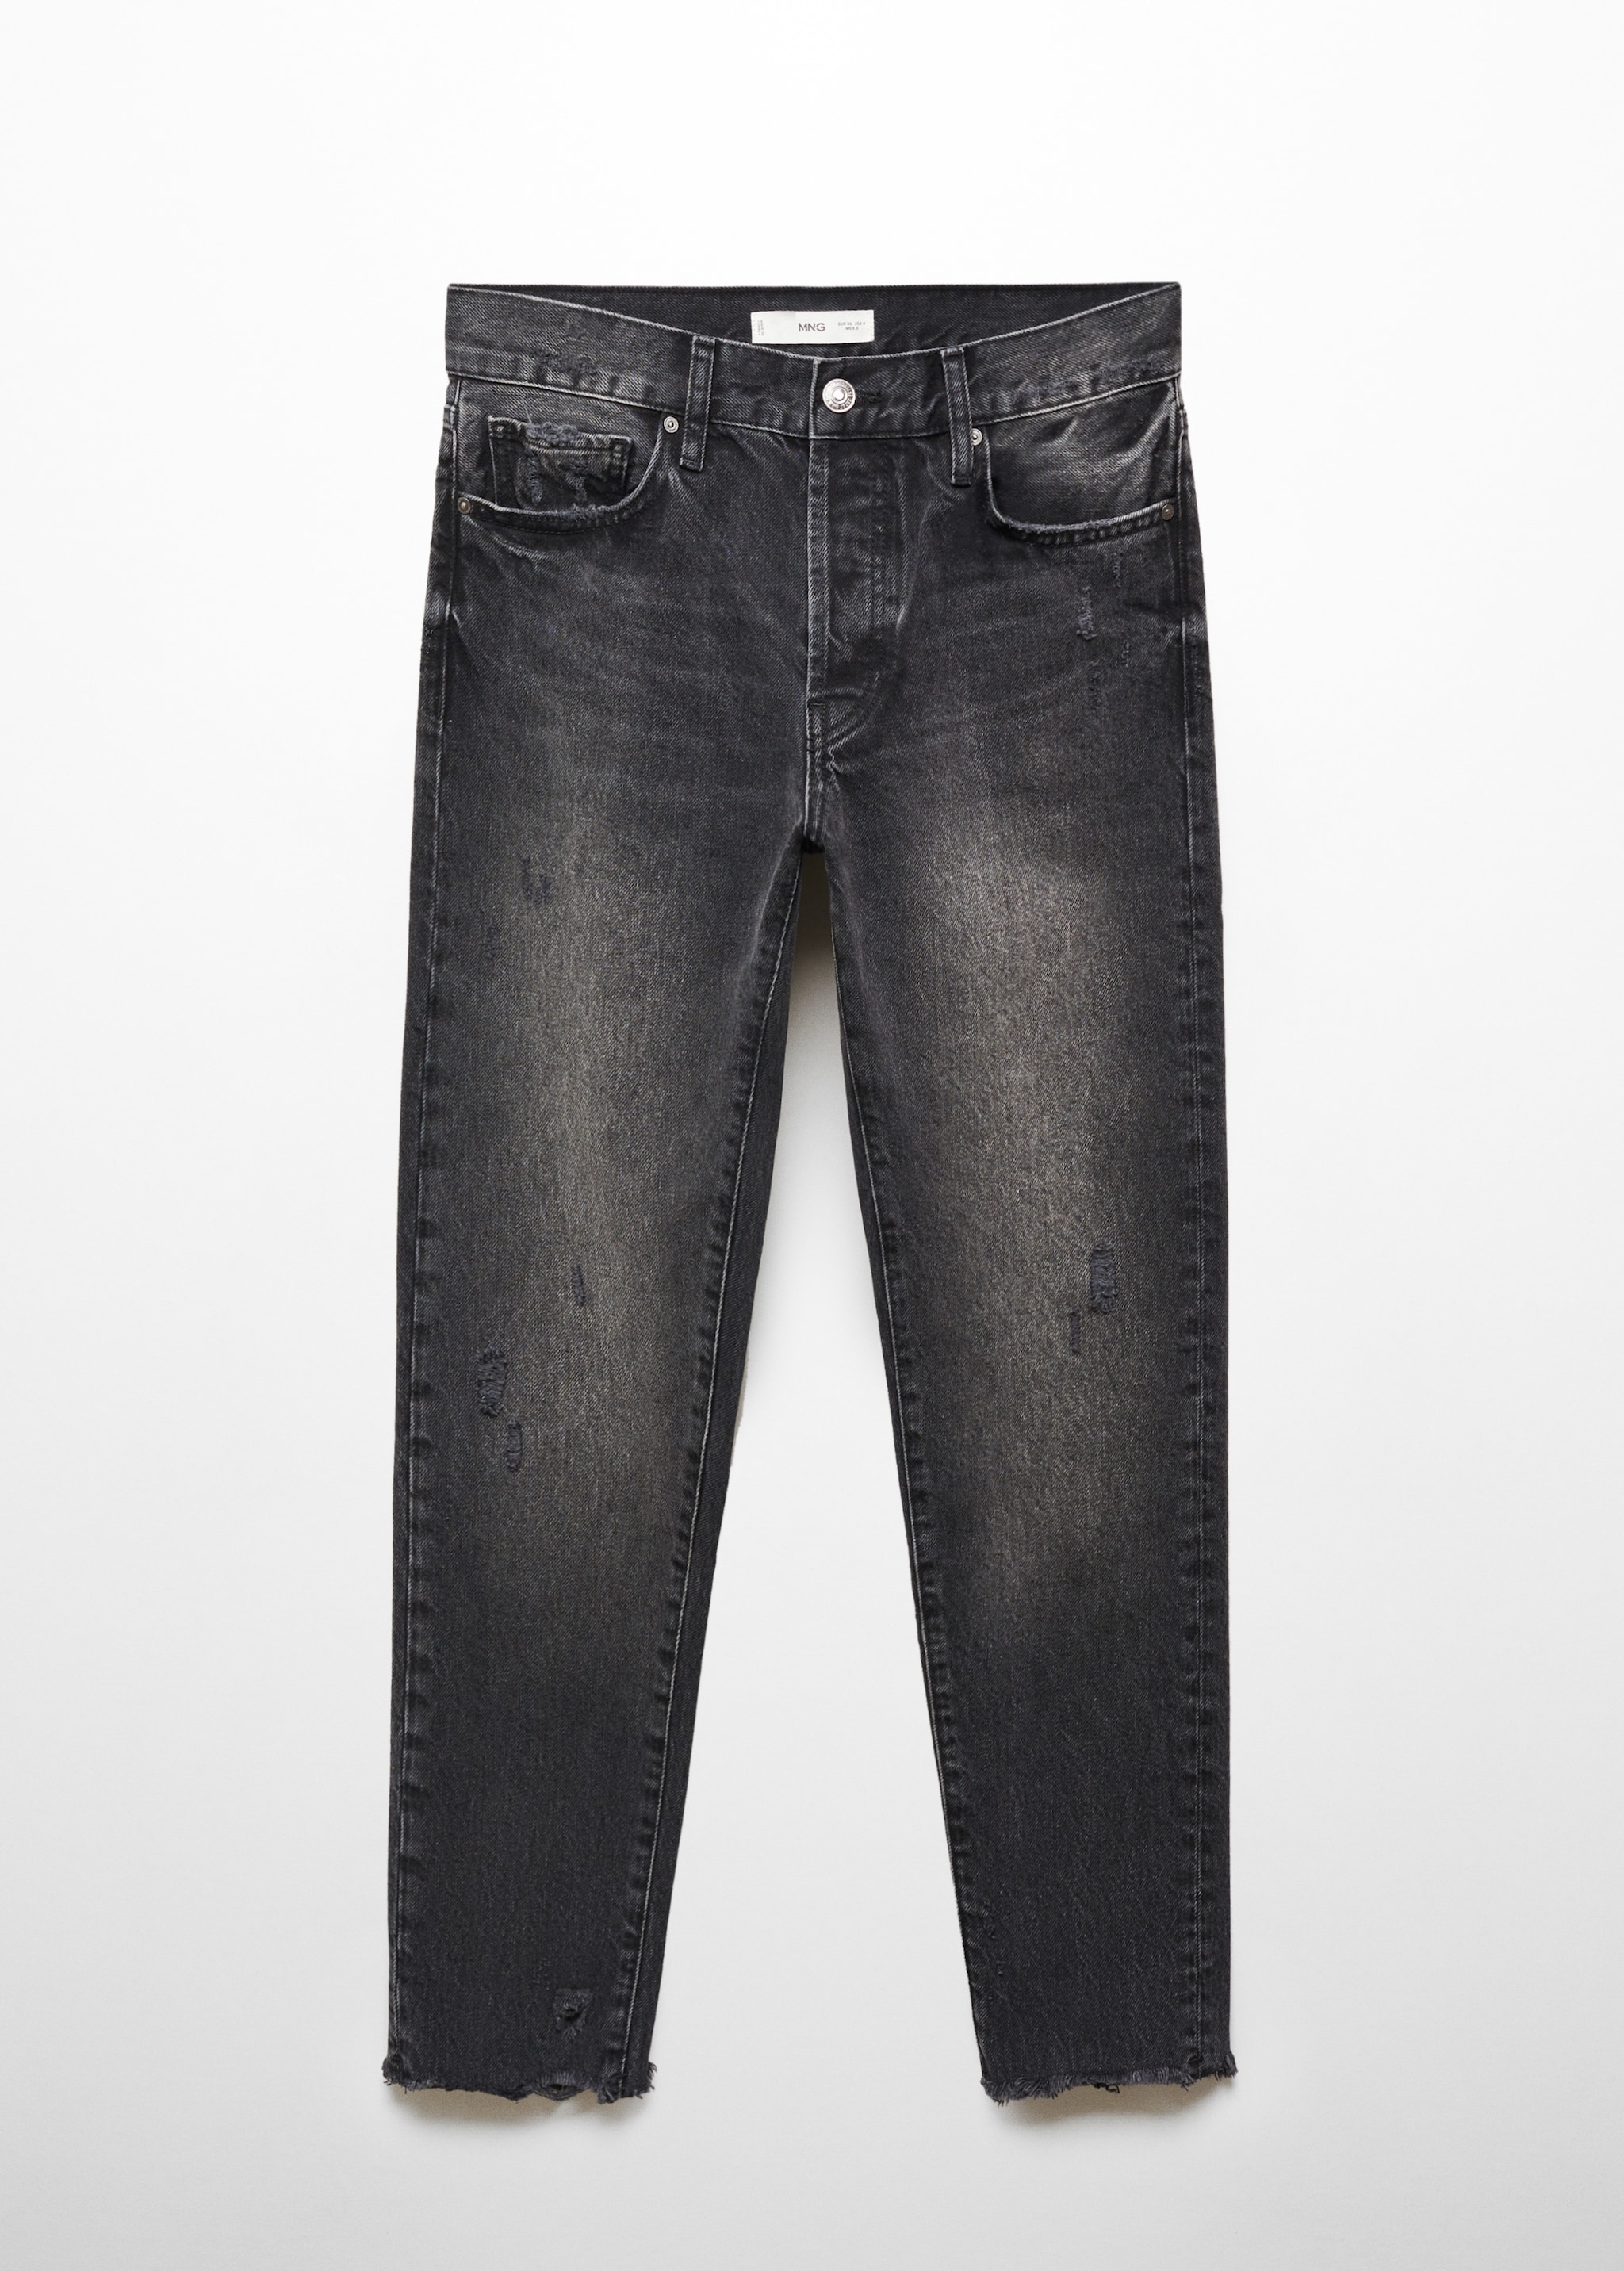 Нарочно рваные джинсы girlfriend с низкой талией - Изделие без модели